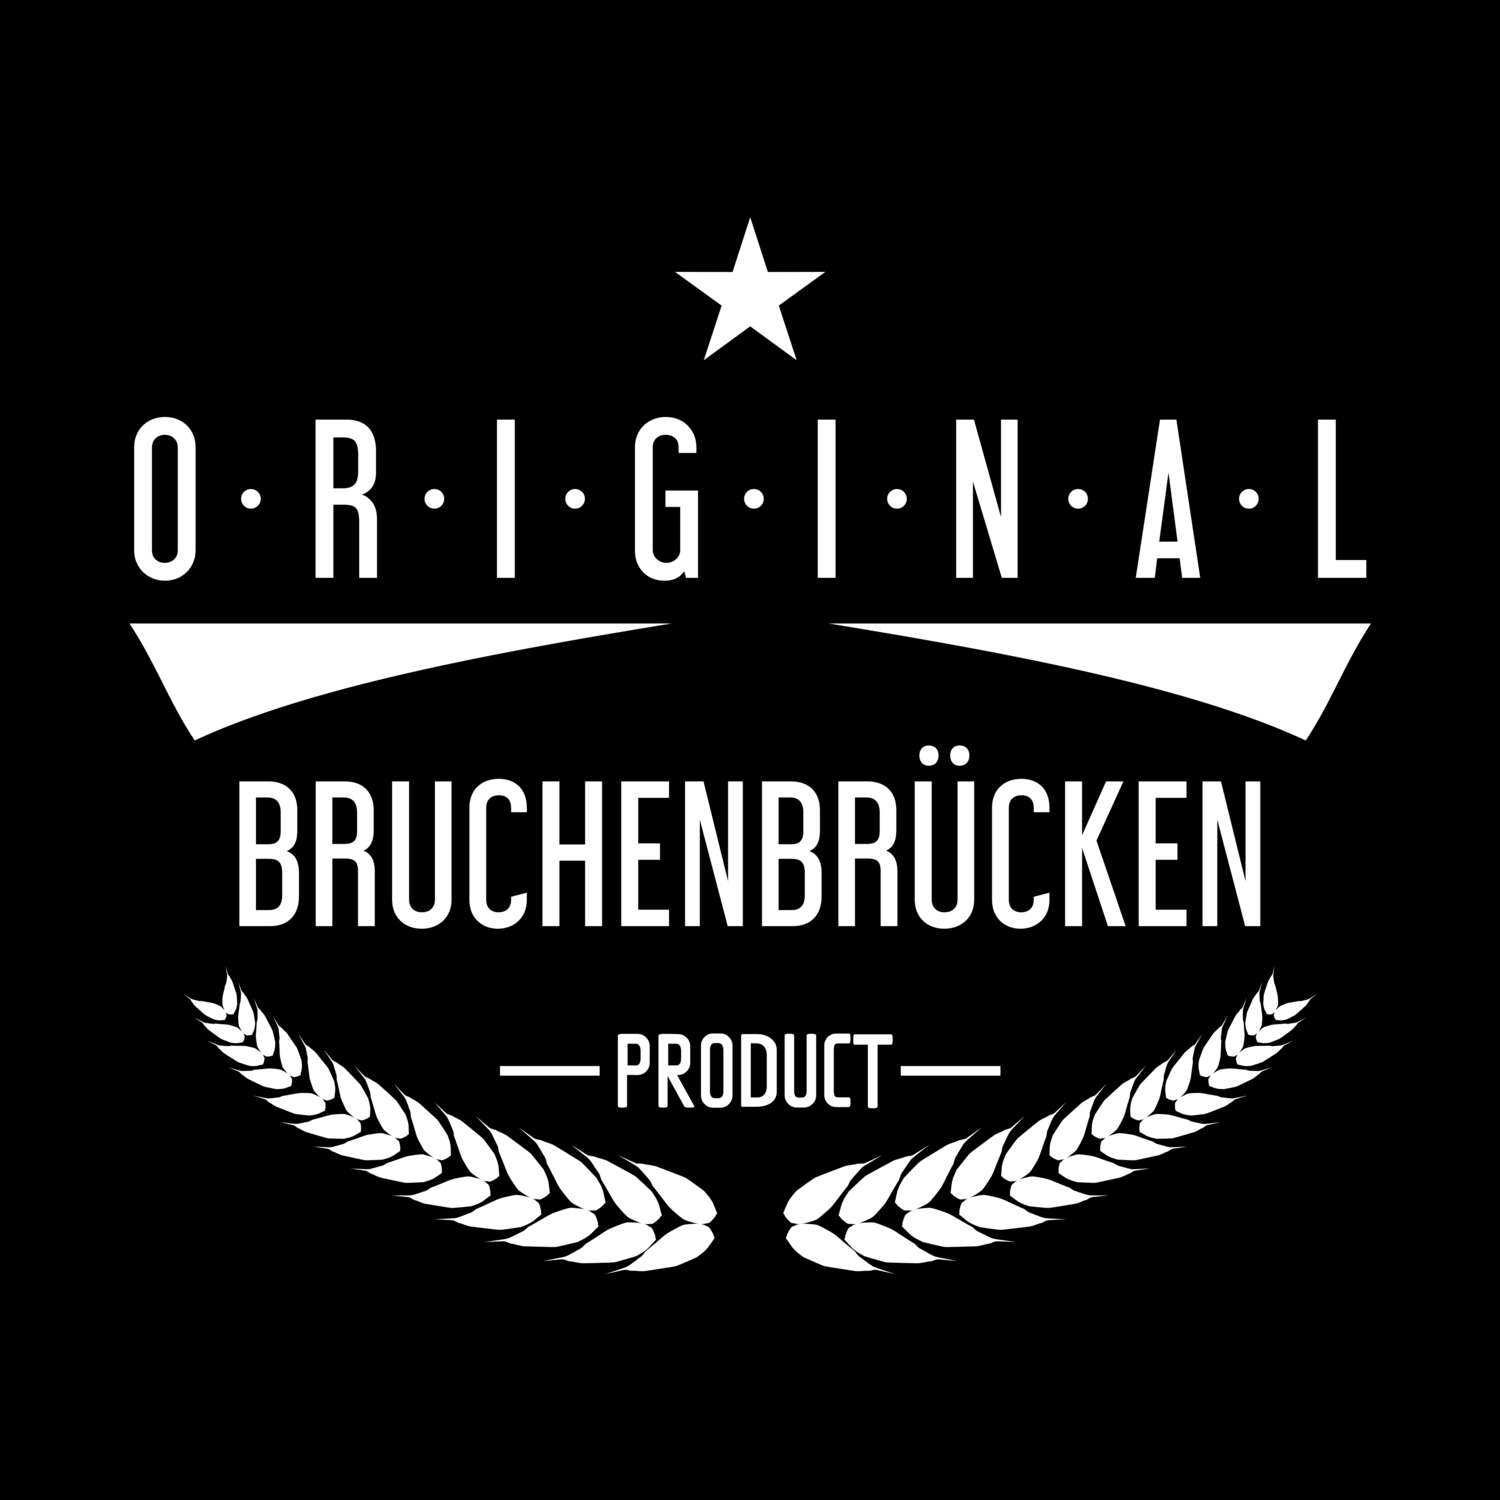 Bruchenbrücken T-Shirt »Original Product«